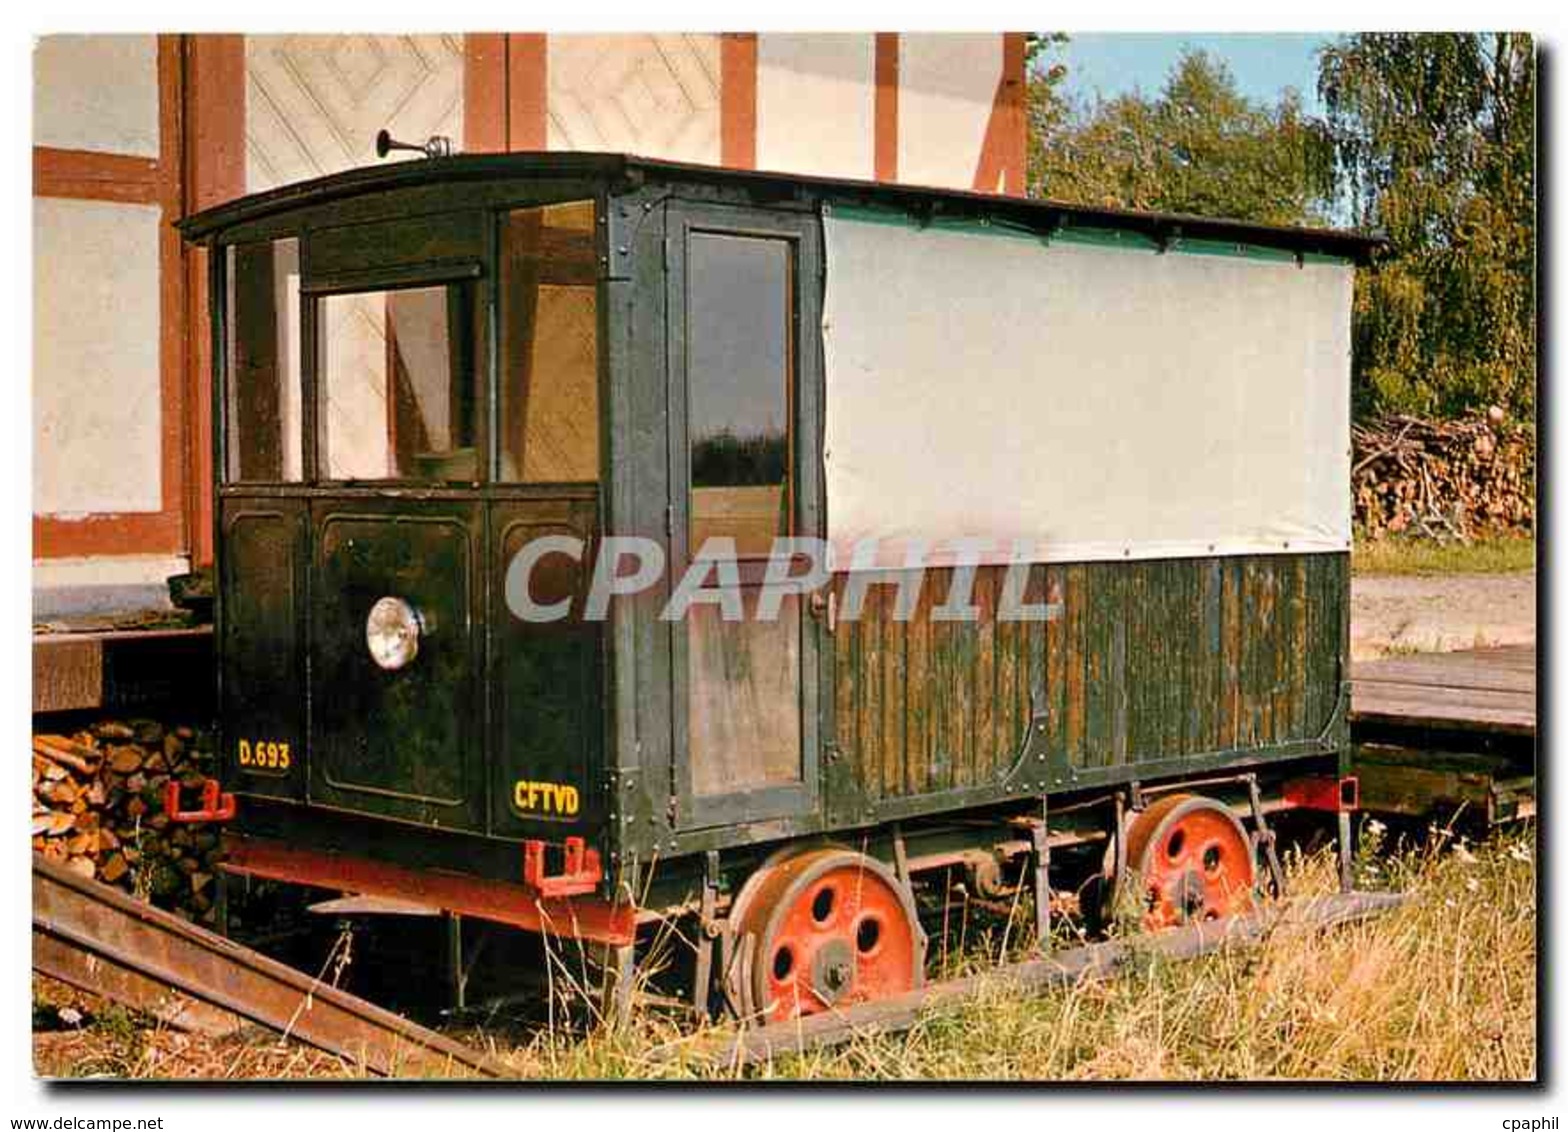 CPM Draisine Billard No.106 En Gare D'ASpach - Eisenbahnen